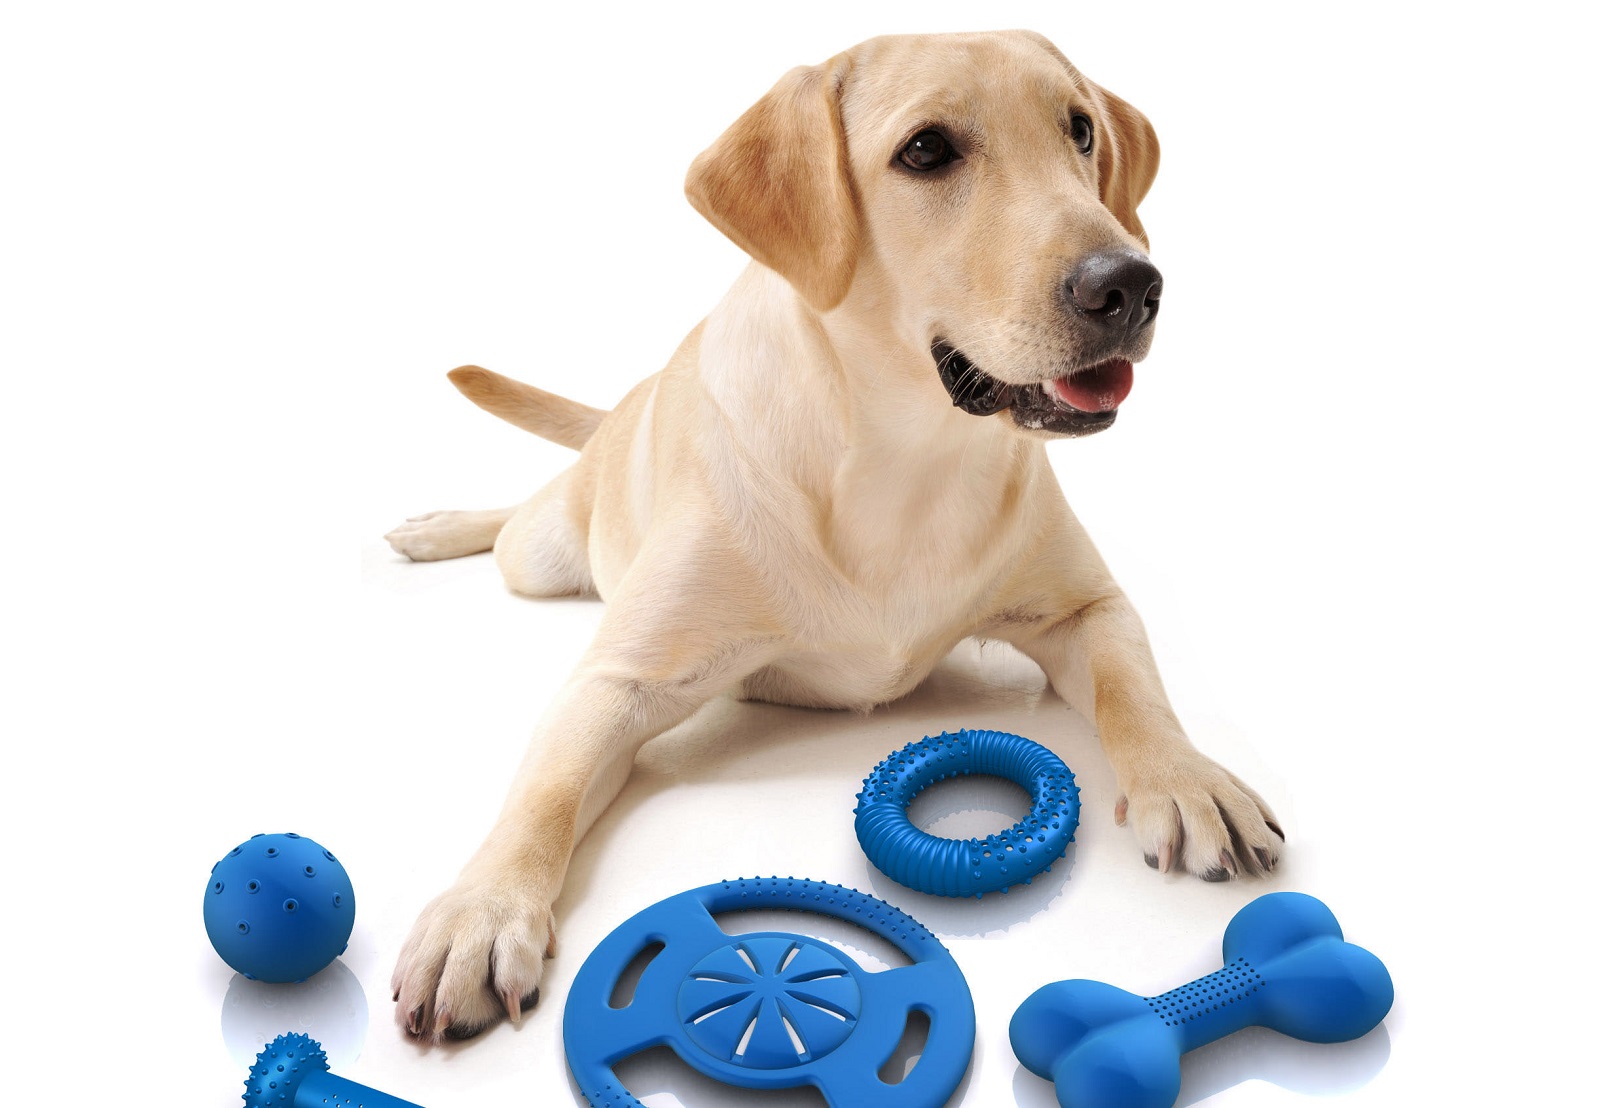 enchufe Banzai Lágrima Los mejores juguetes para perros según las razas - RedCanina.es